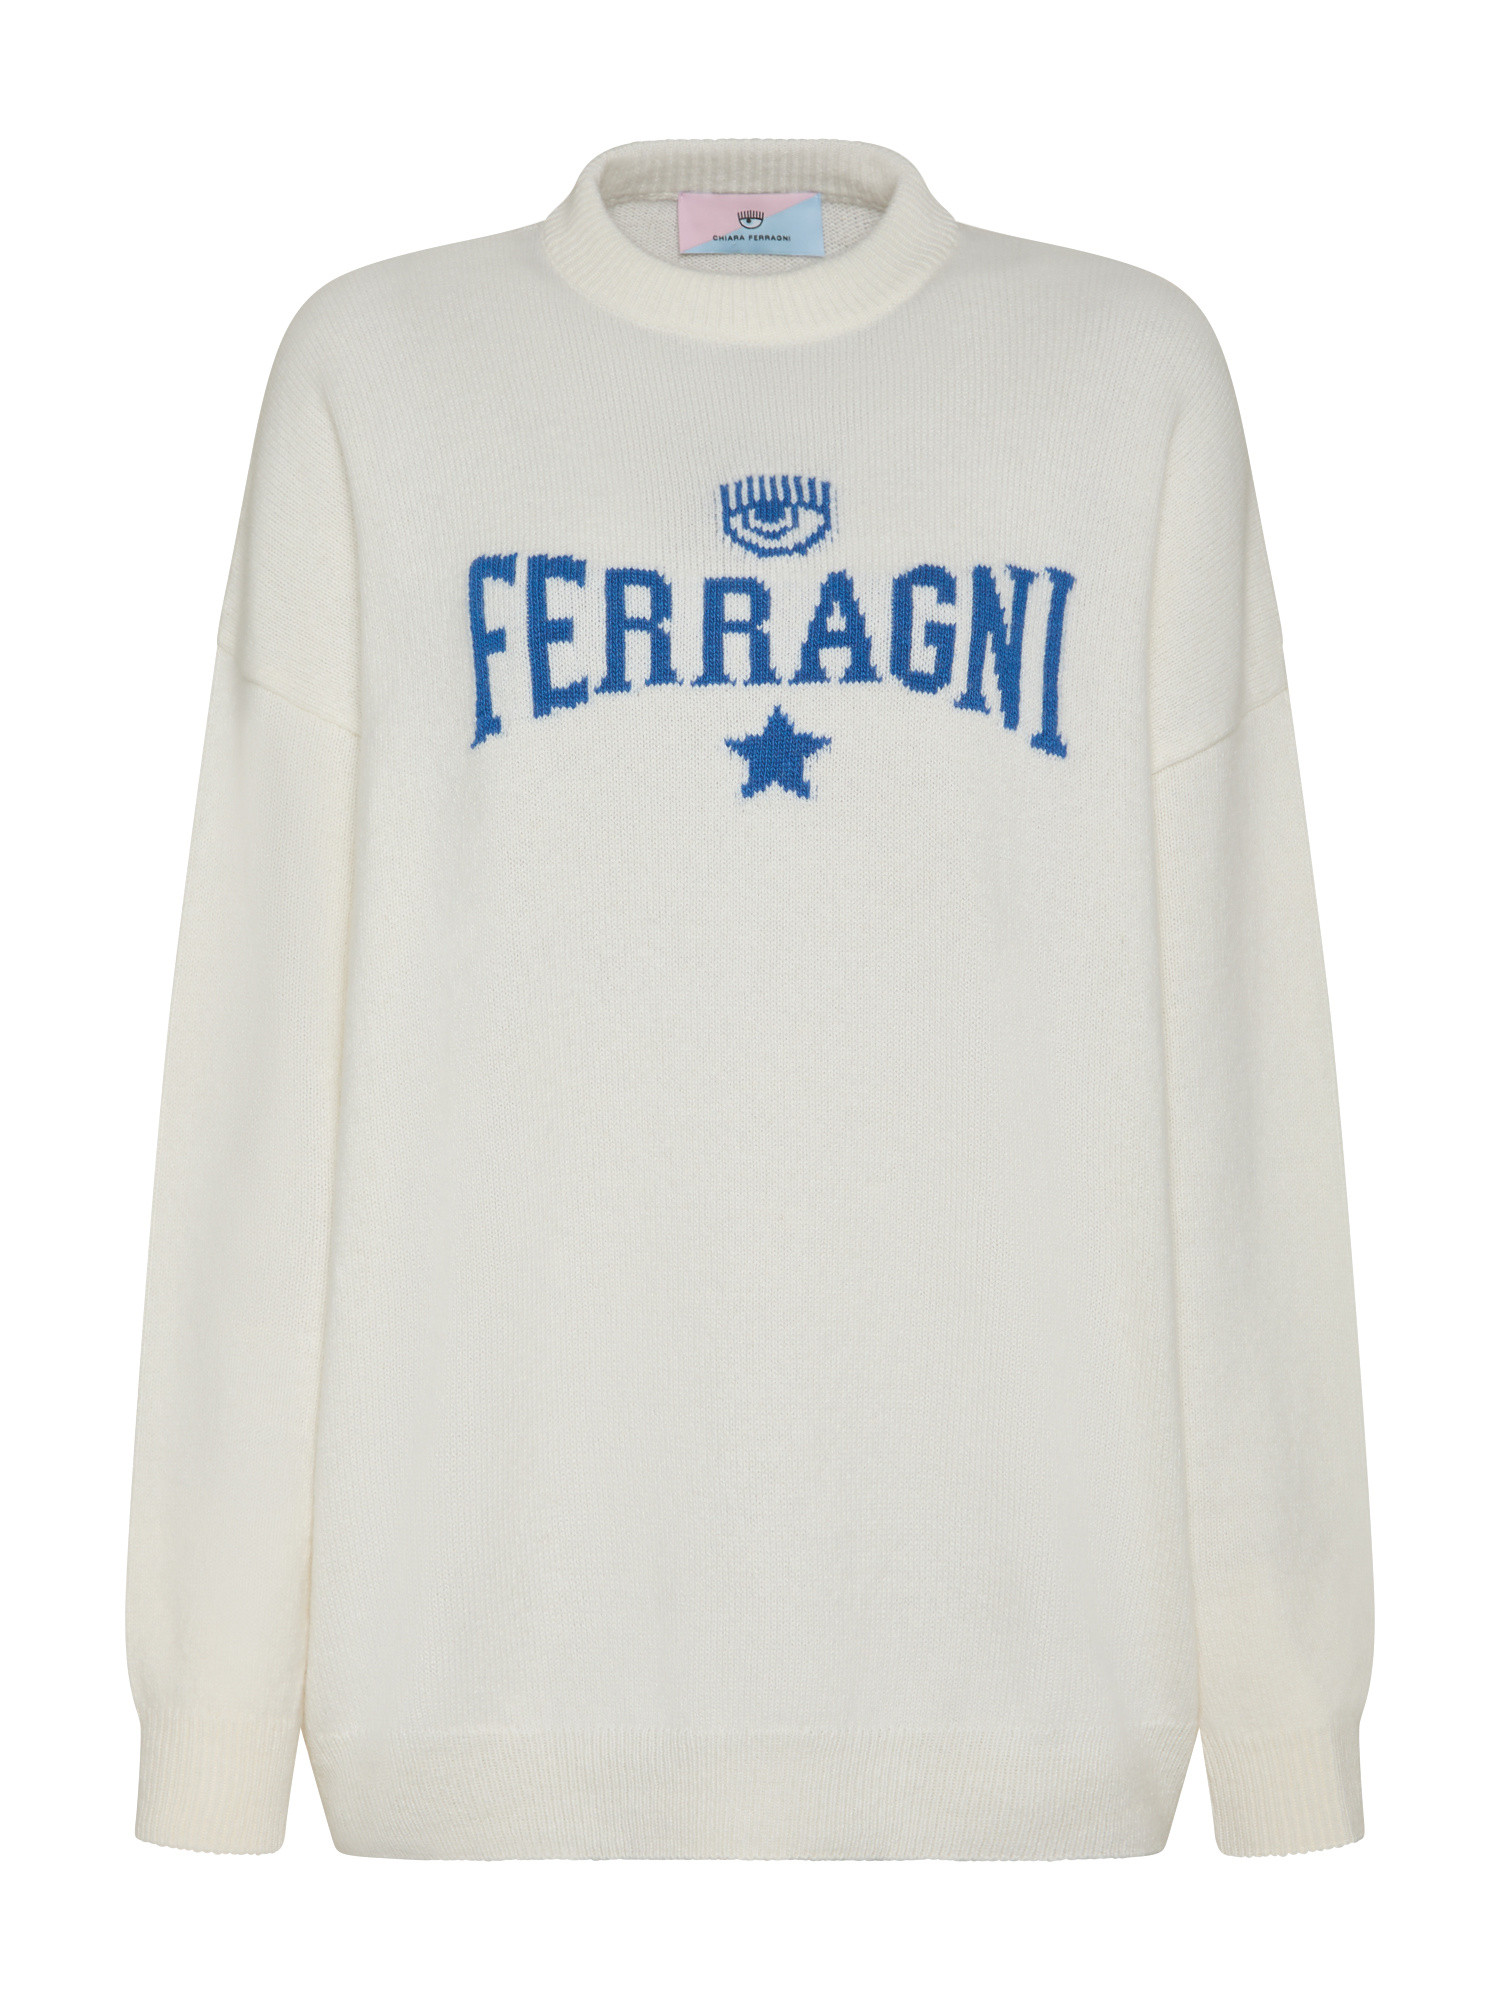 Chiara Ferragni эластичный свитер Ferragni, белый мужской свитер с круглым вырезом длинным рукавом флисовой подкладкой и манжетами в рубчик зимний плотный теплый свитер с узором в клетку